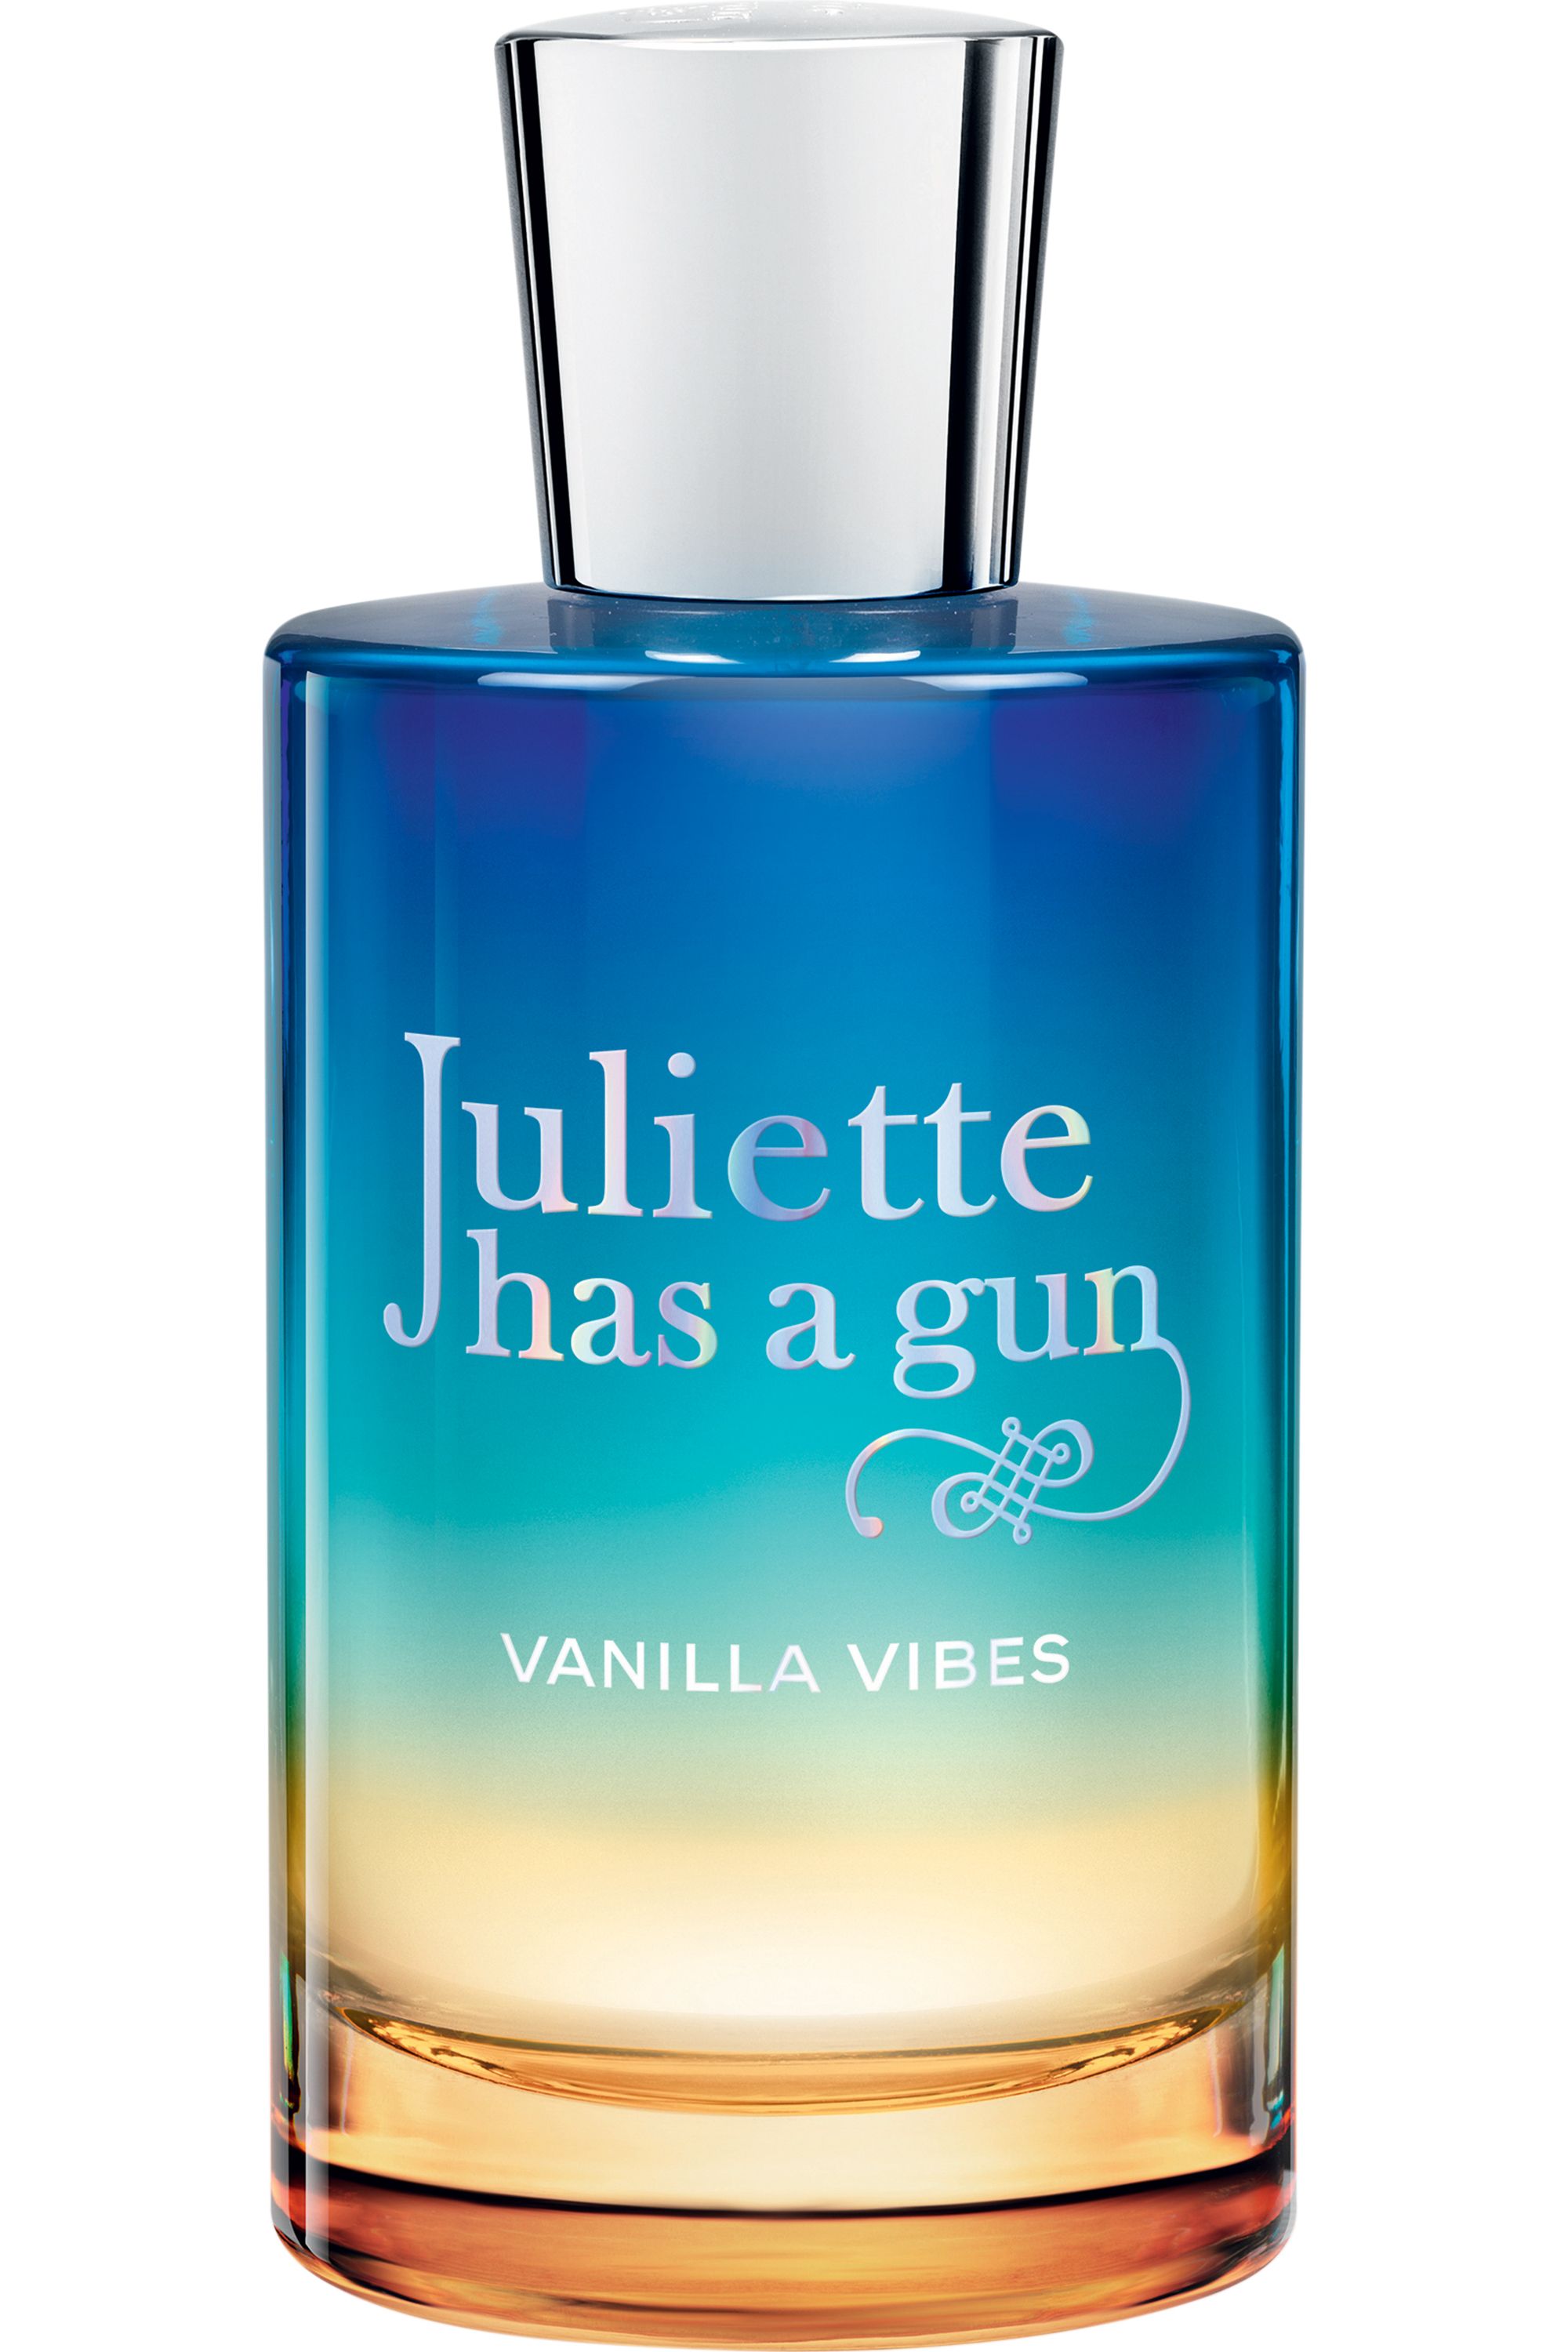 Джульет парфюм. Juliette has a Gun Vanilla Vibes 100мл. Juliette has a Gun Vanilla Vibes 50 ml. Духи Juliette has a Gun Vanilla Vibes. Парфюм Juliette has a Gun.